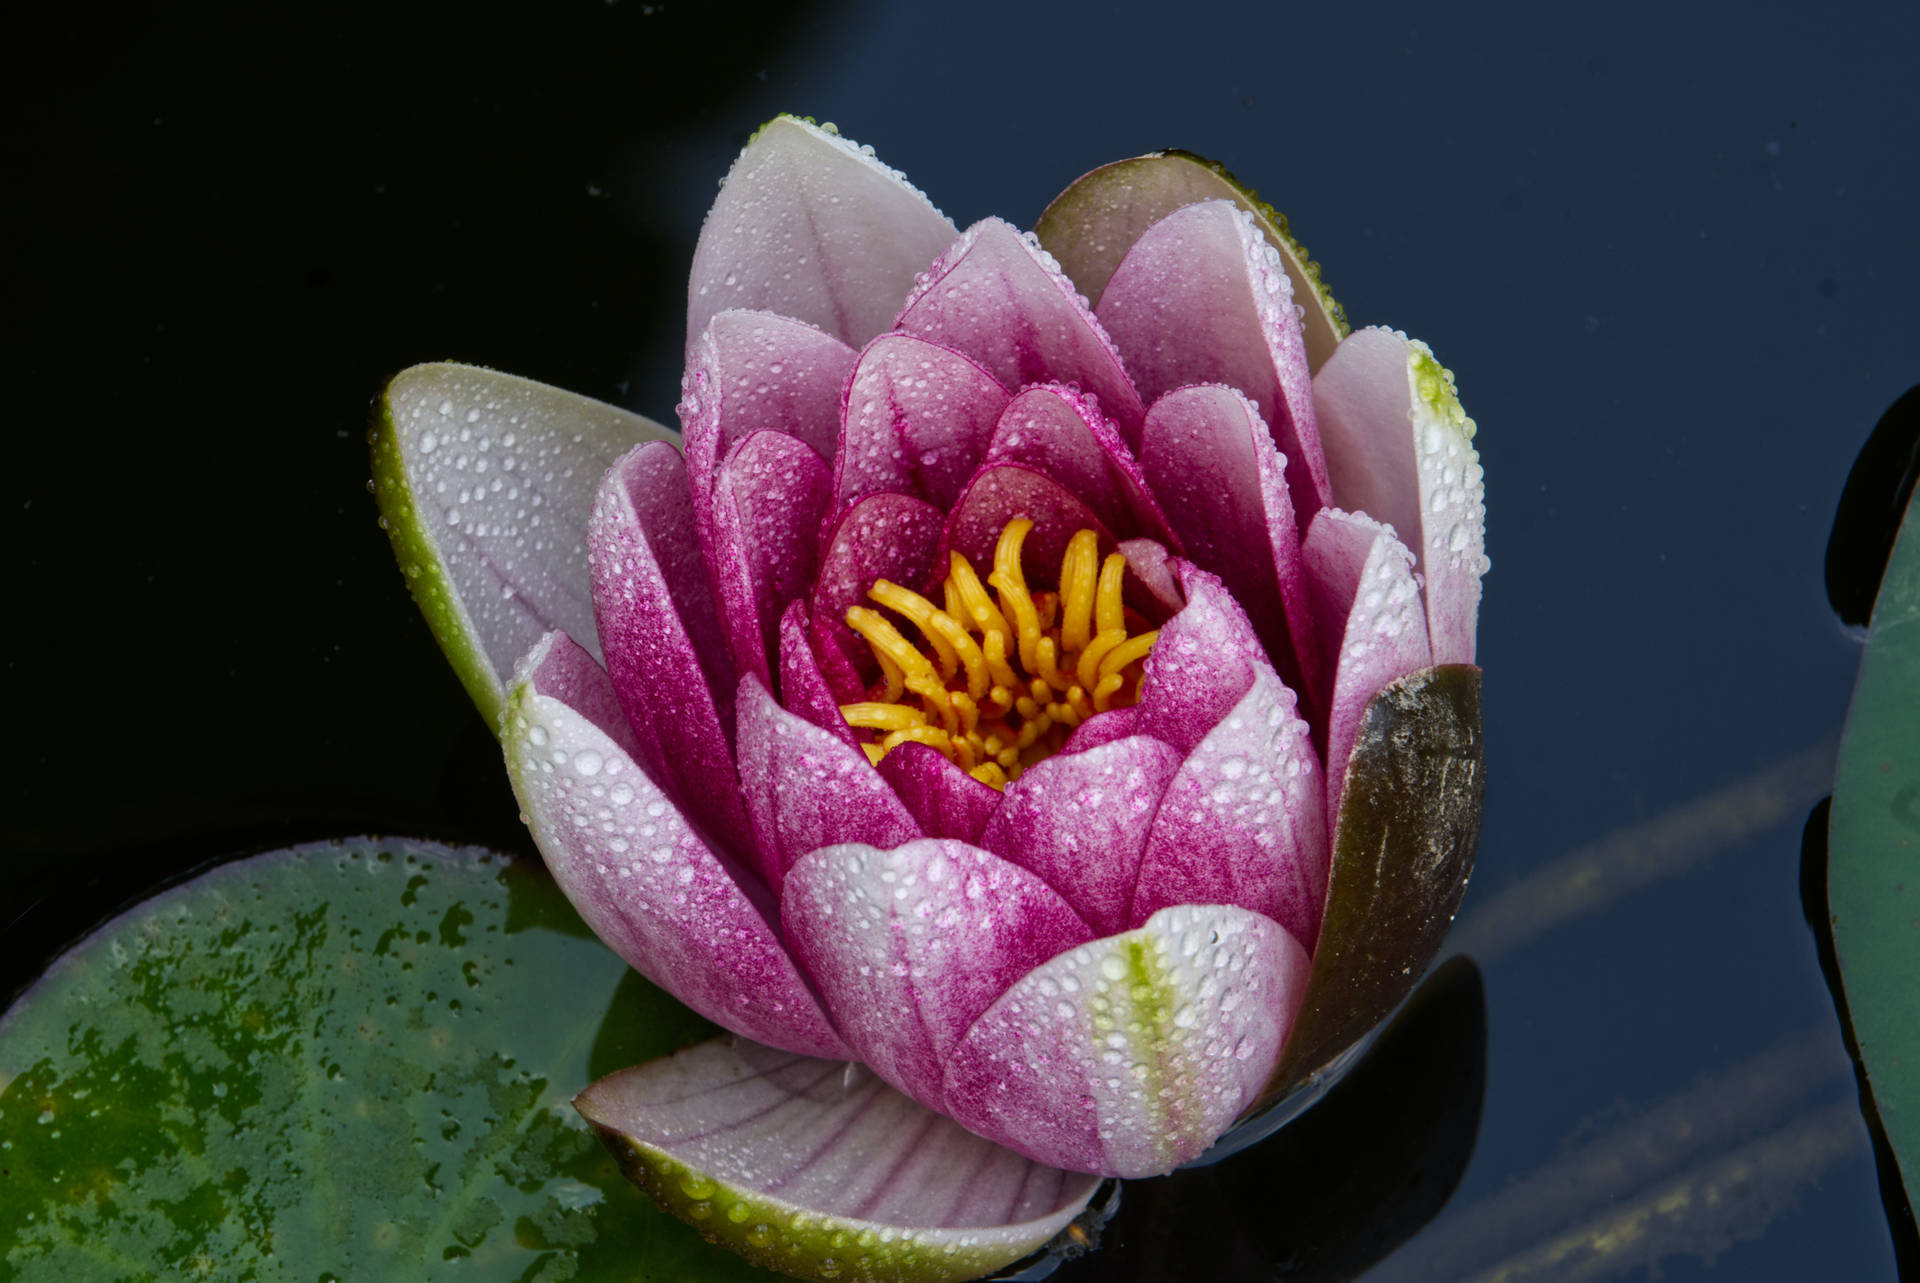 Blooming Lotus Flower